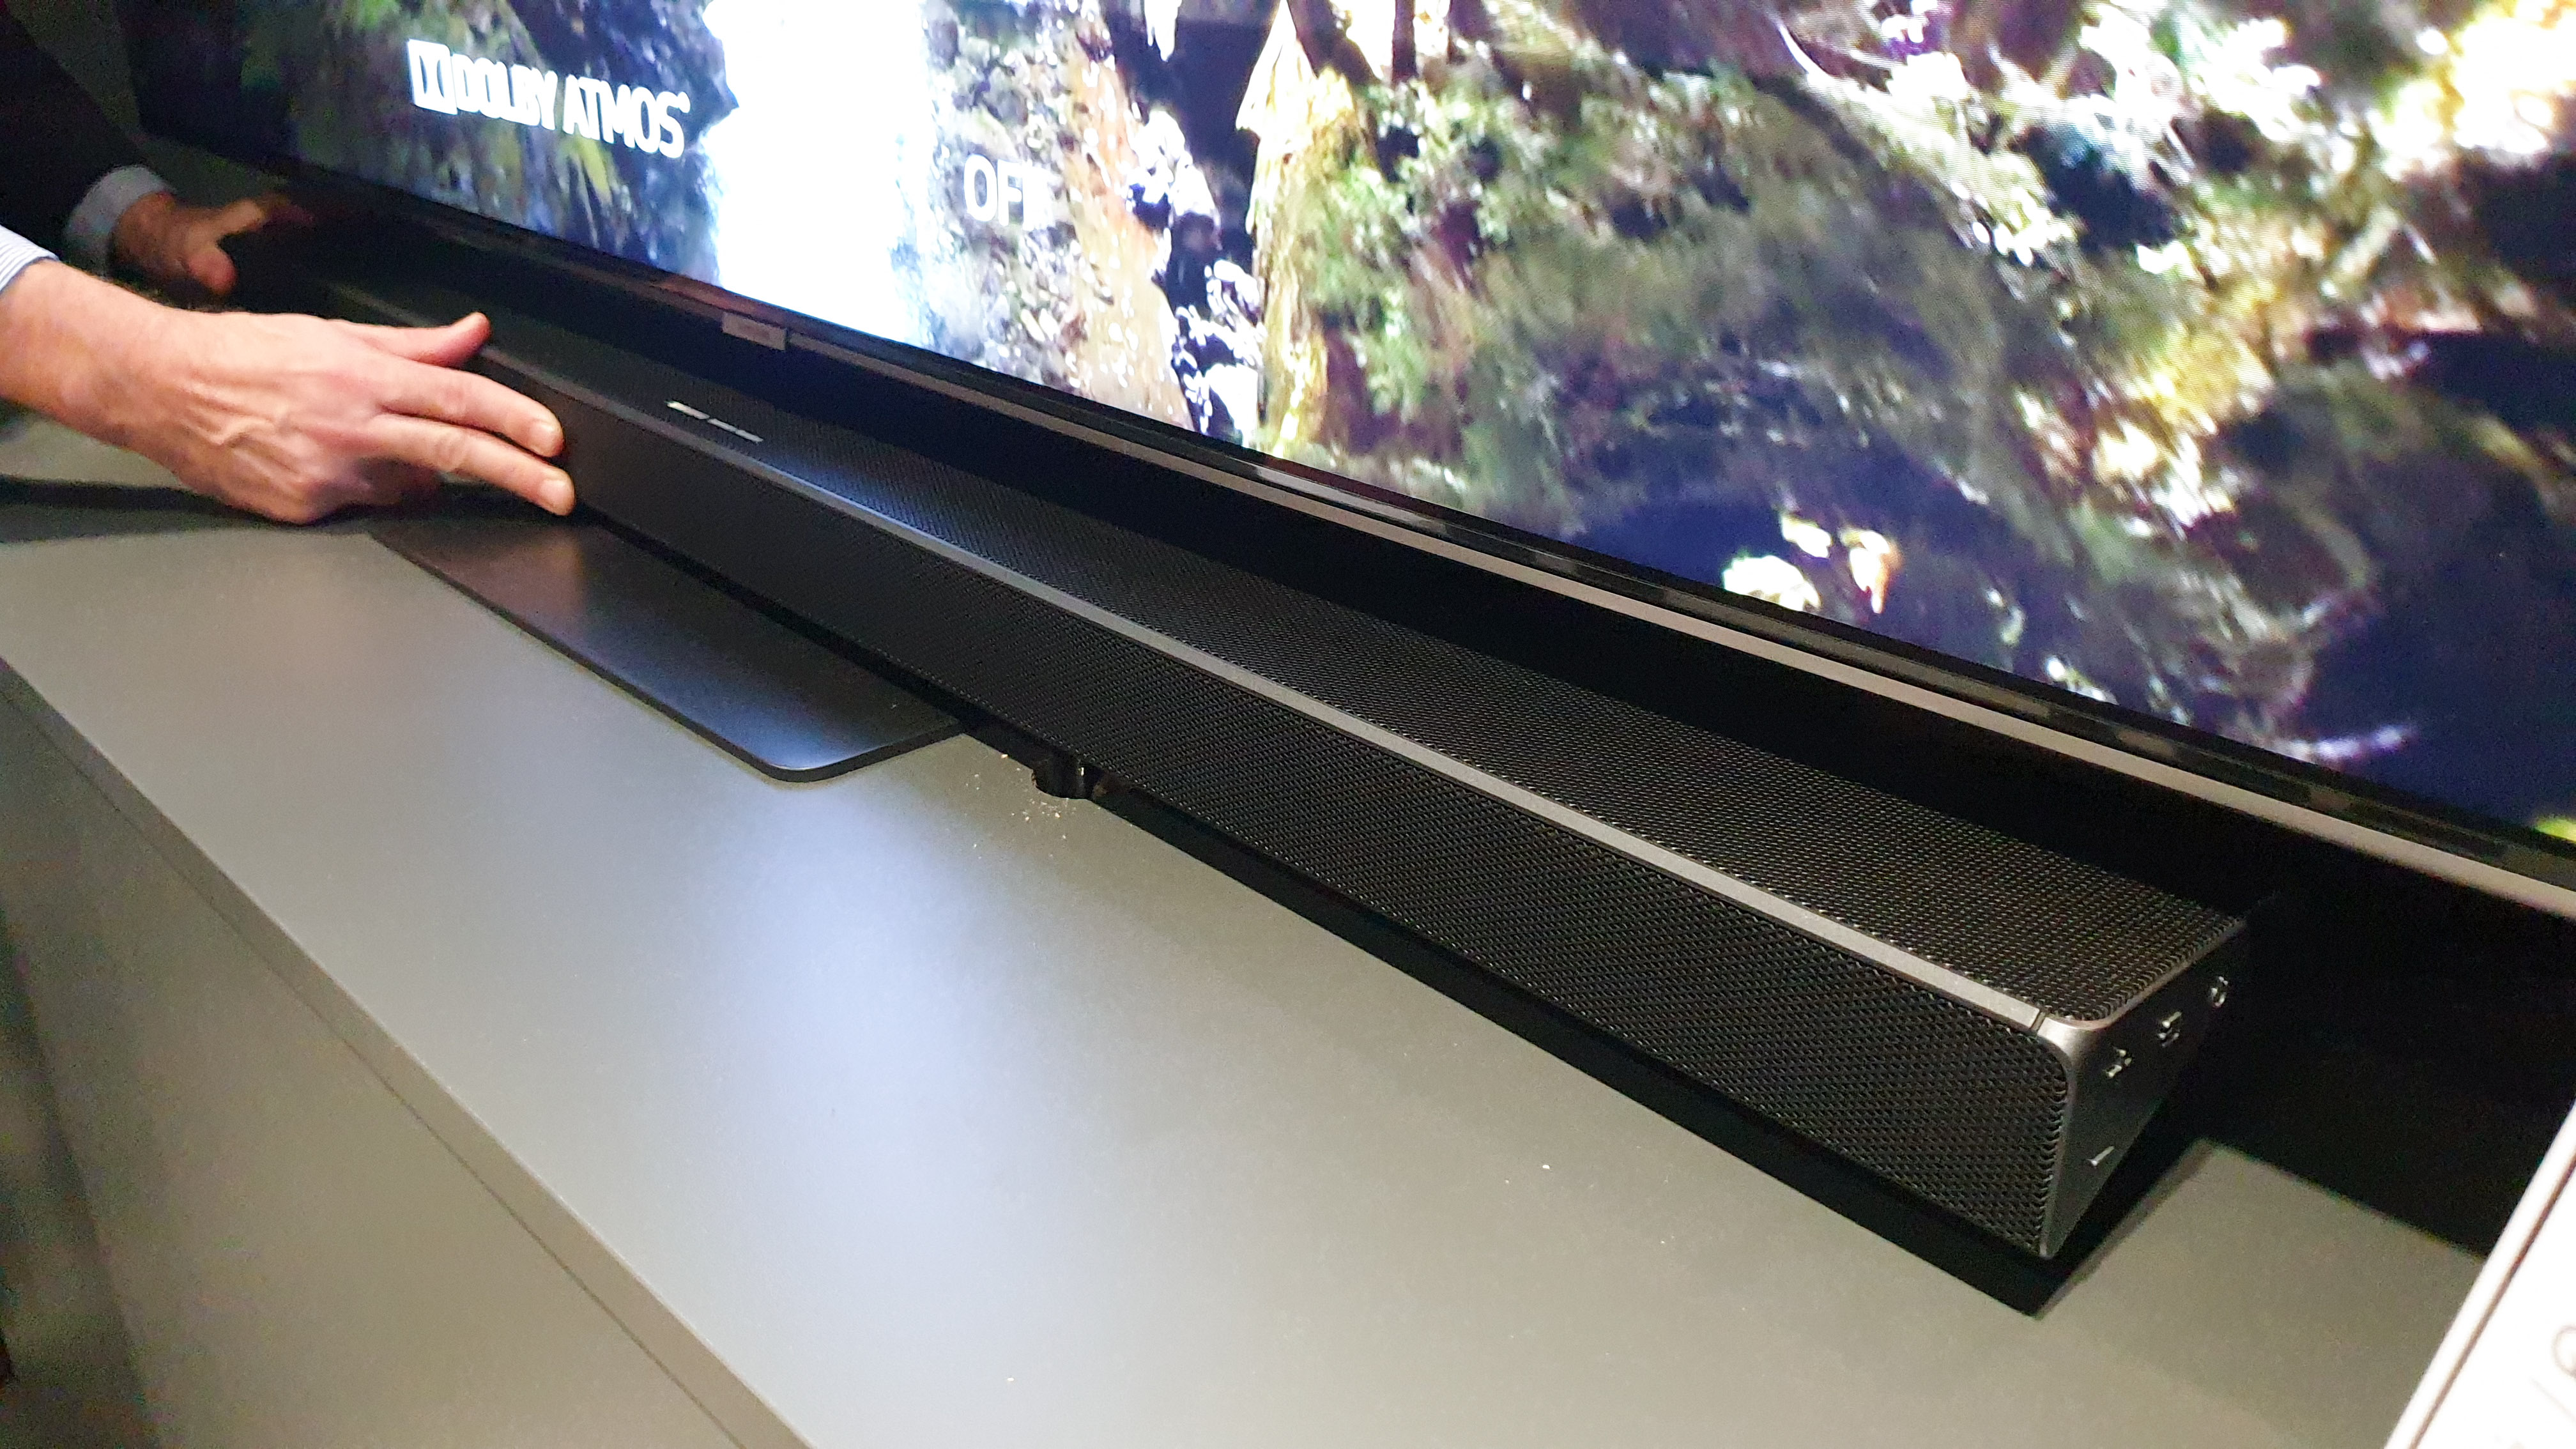 Cette TV Samsung The Frame voit son prix chuter sous la barre des 500 euros  sur